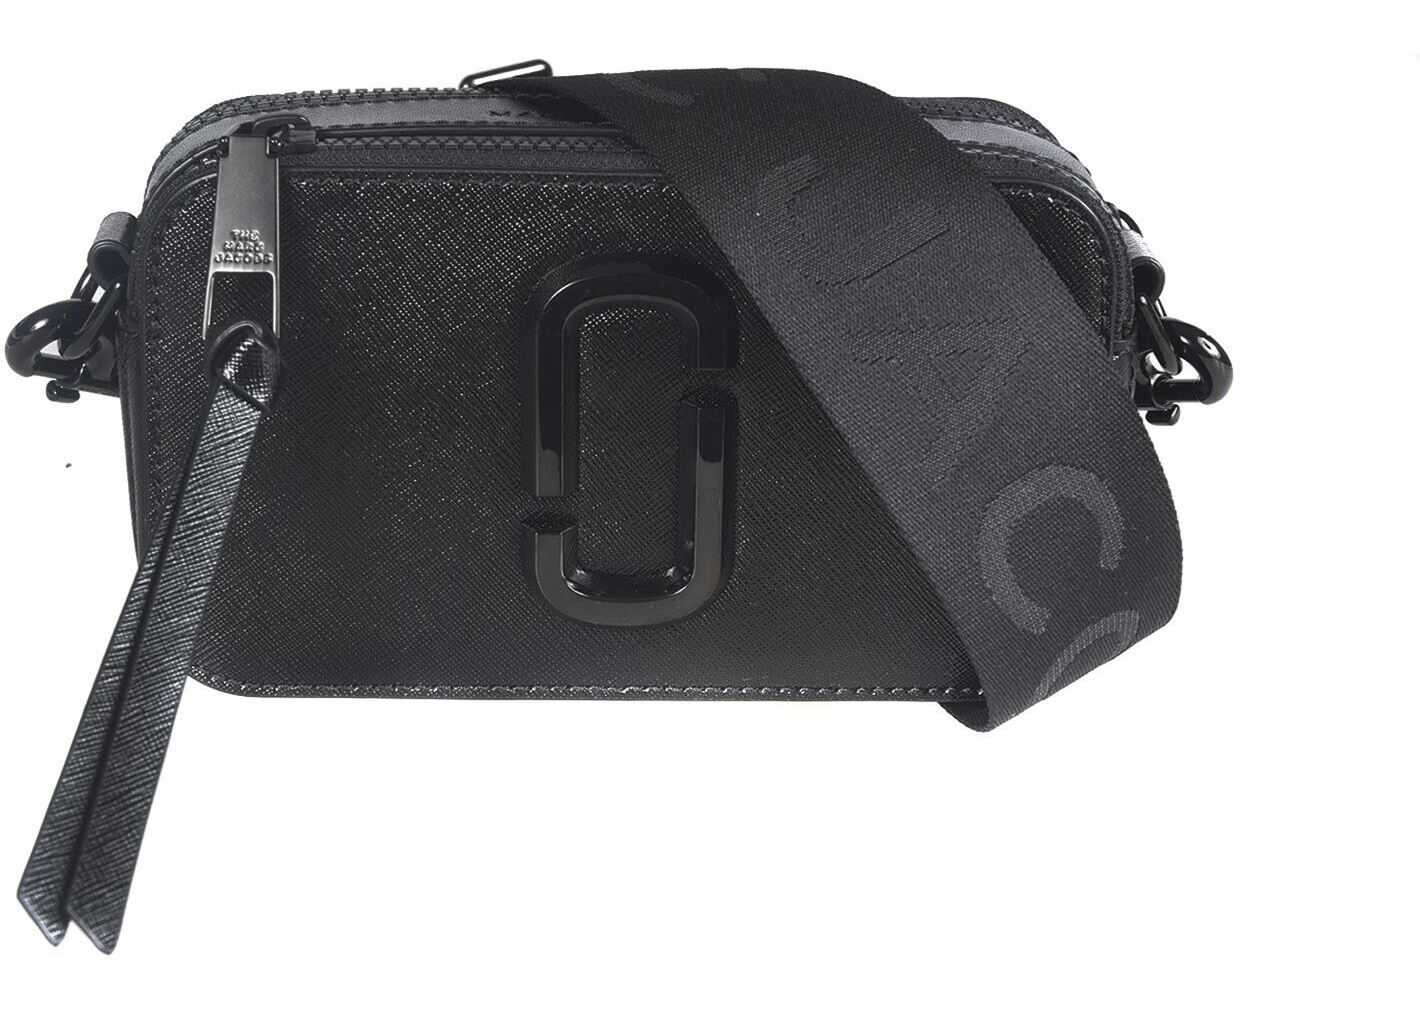 Marc Jacobs Snapshot Shoulder Bag In Black M0014867 001 Black